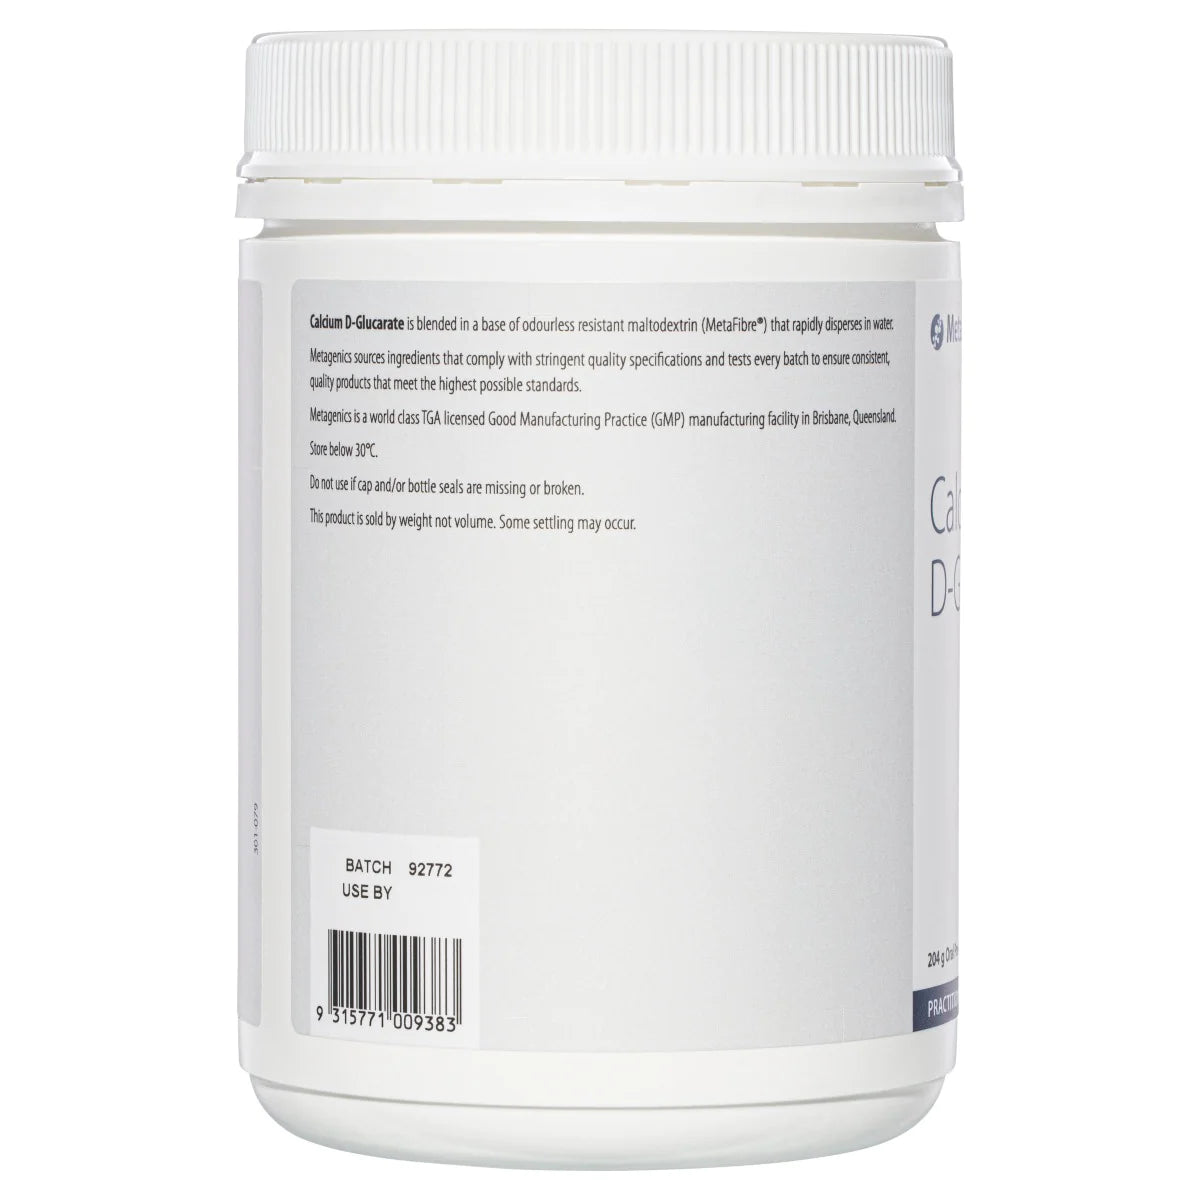 Calcium D-Glucarate 204 g (Extemporaneous Compounding Nutrient)